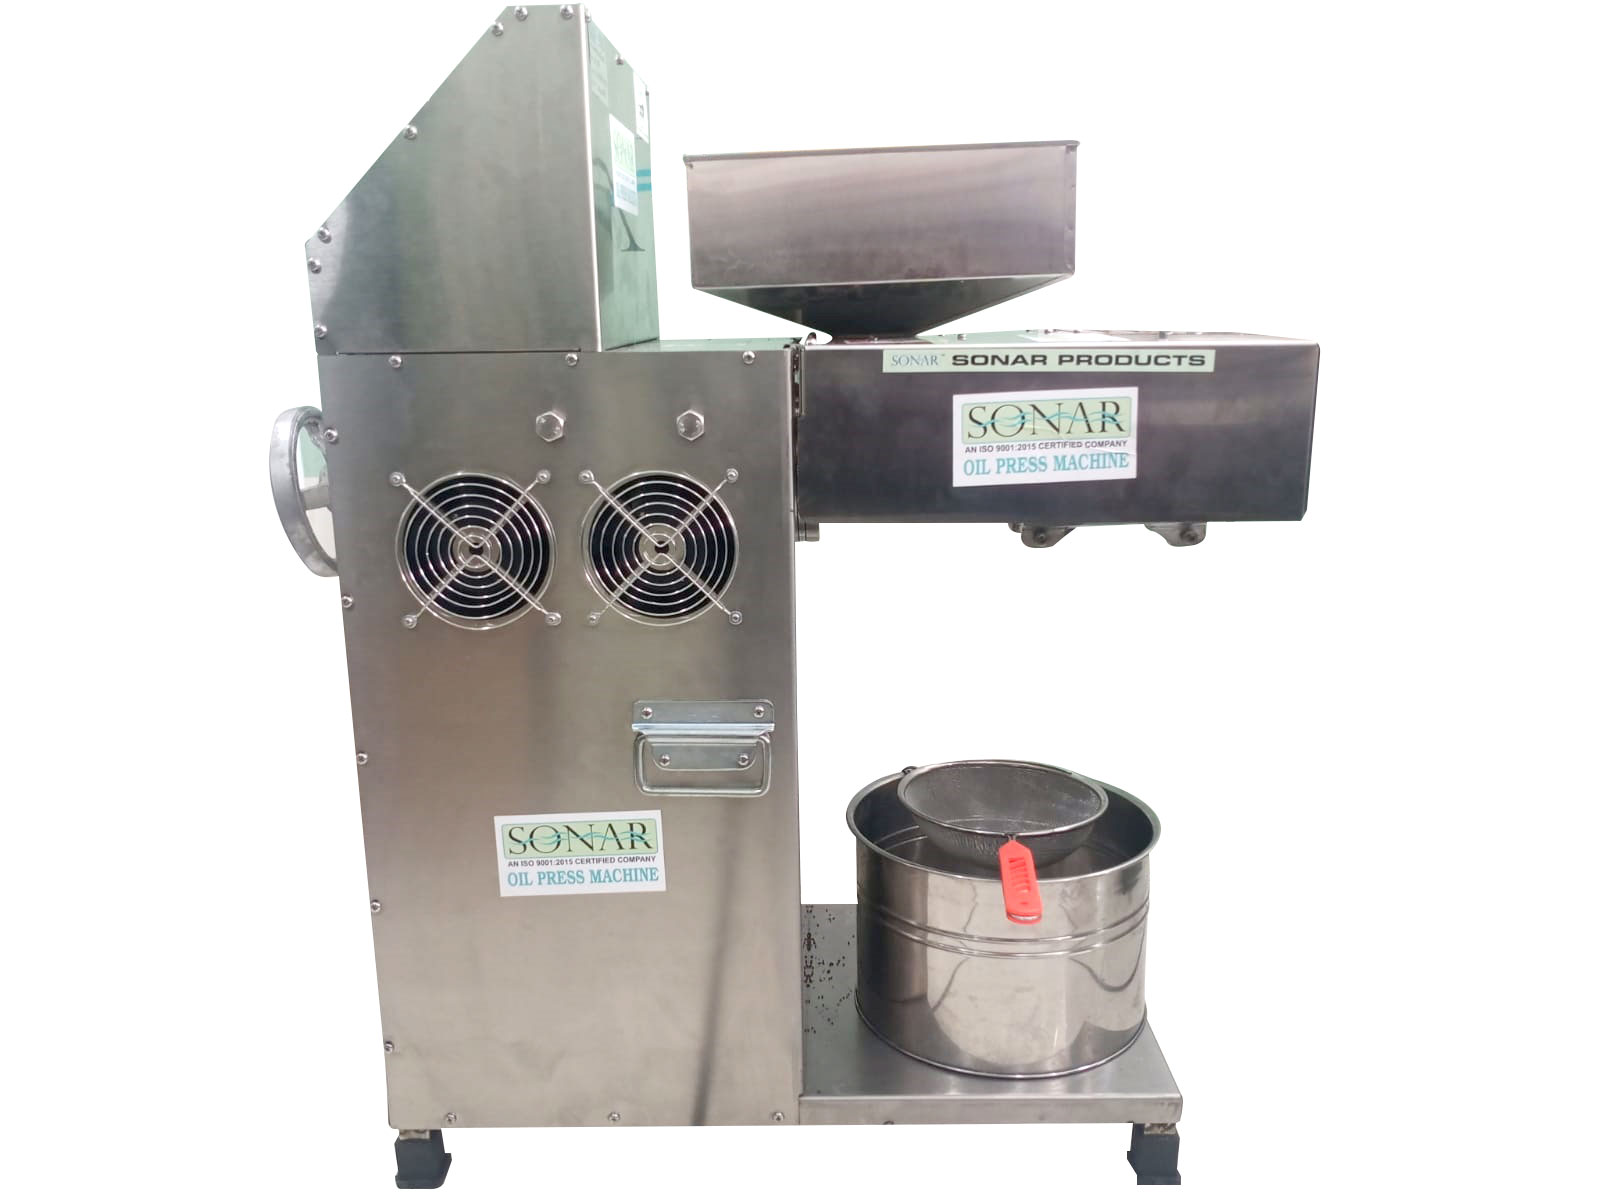 Semi-Automatic SA-2019 Commercial Cold Press Oil Machine